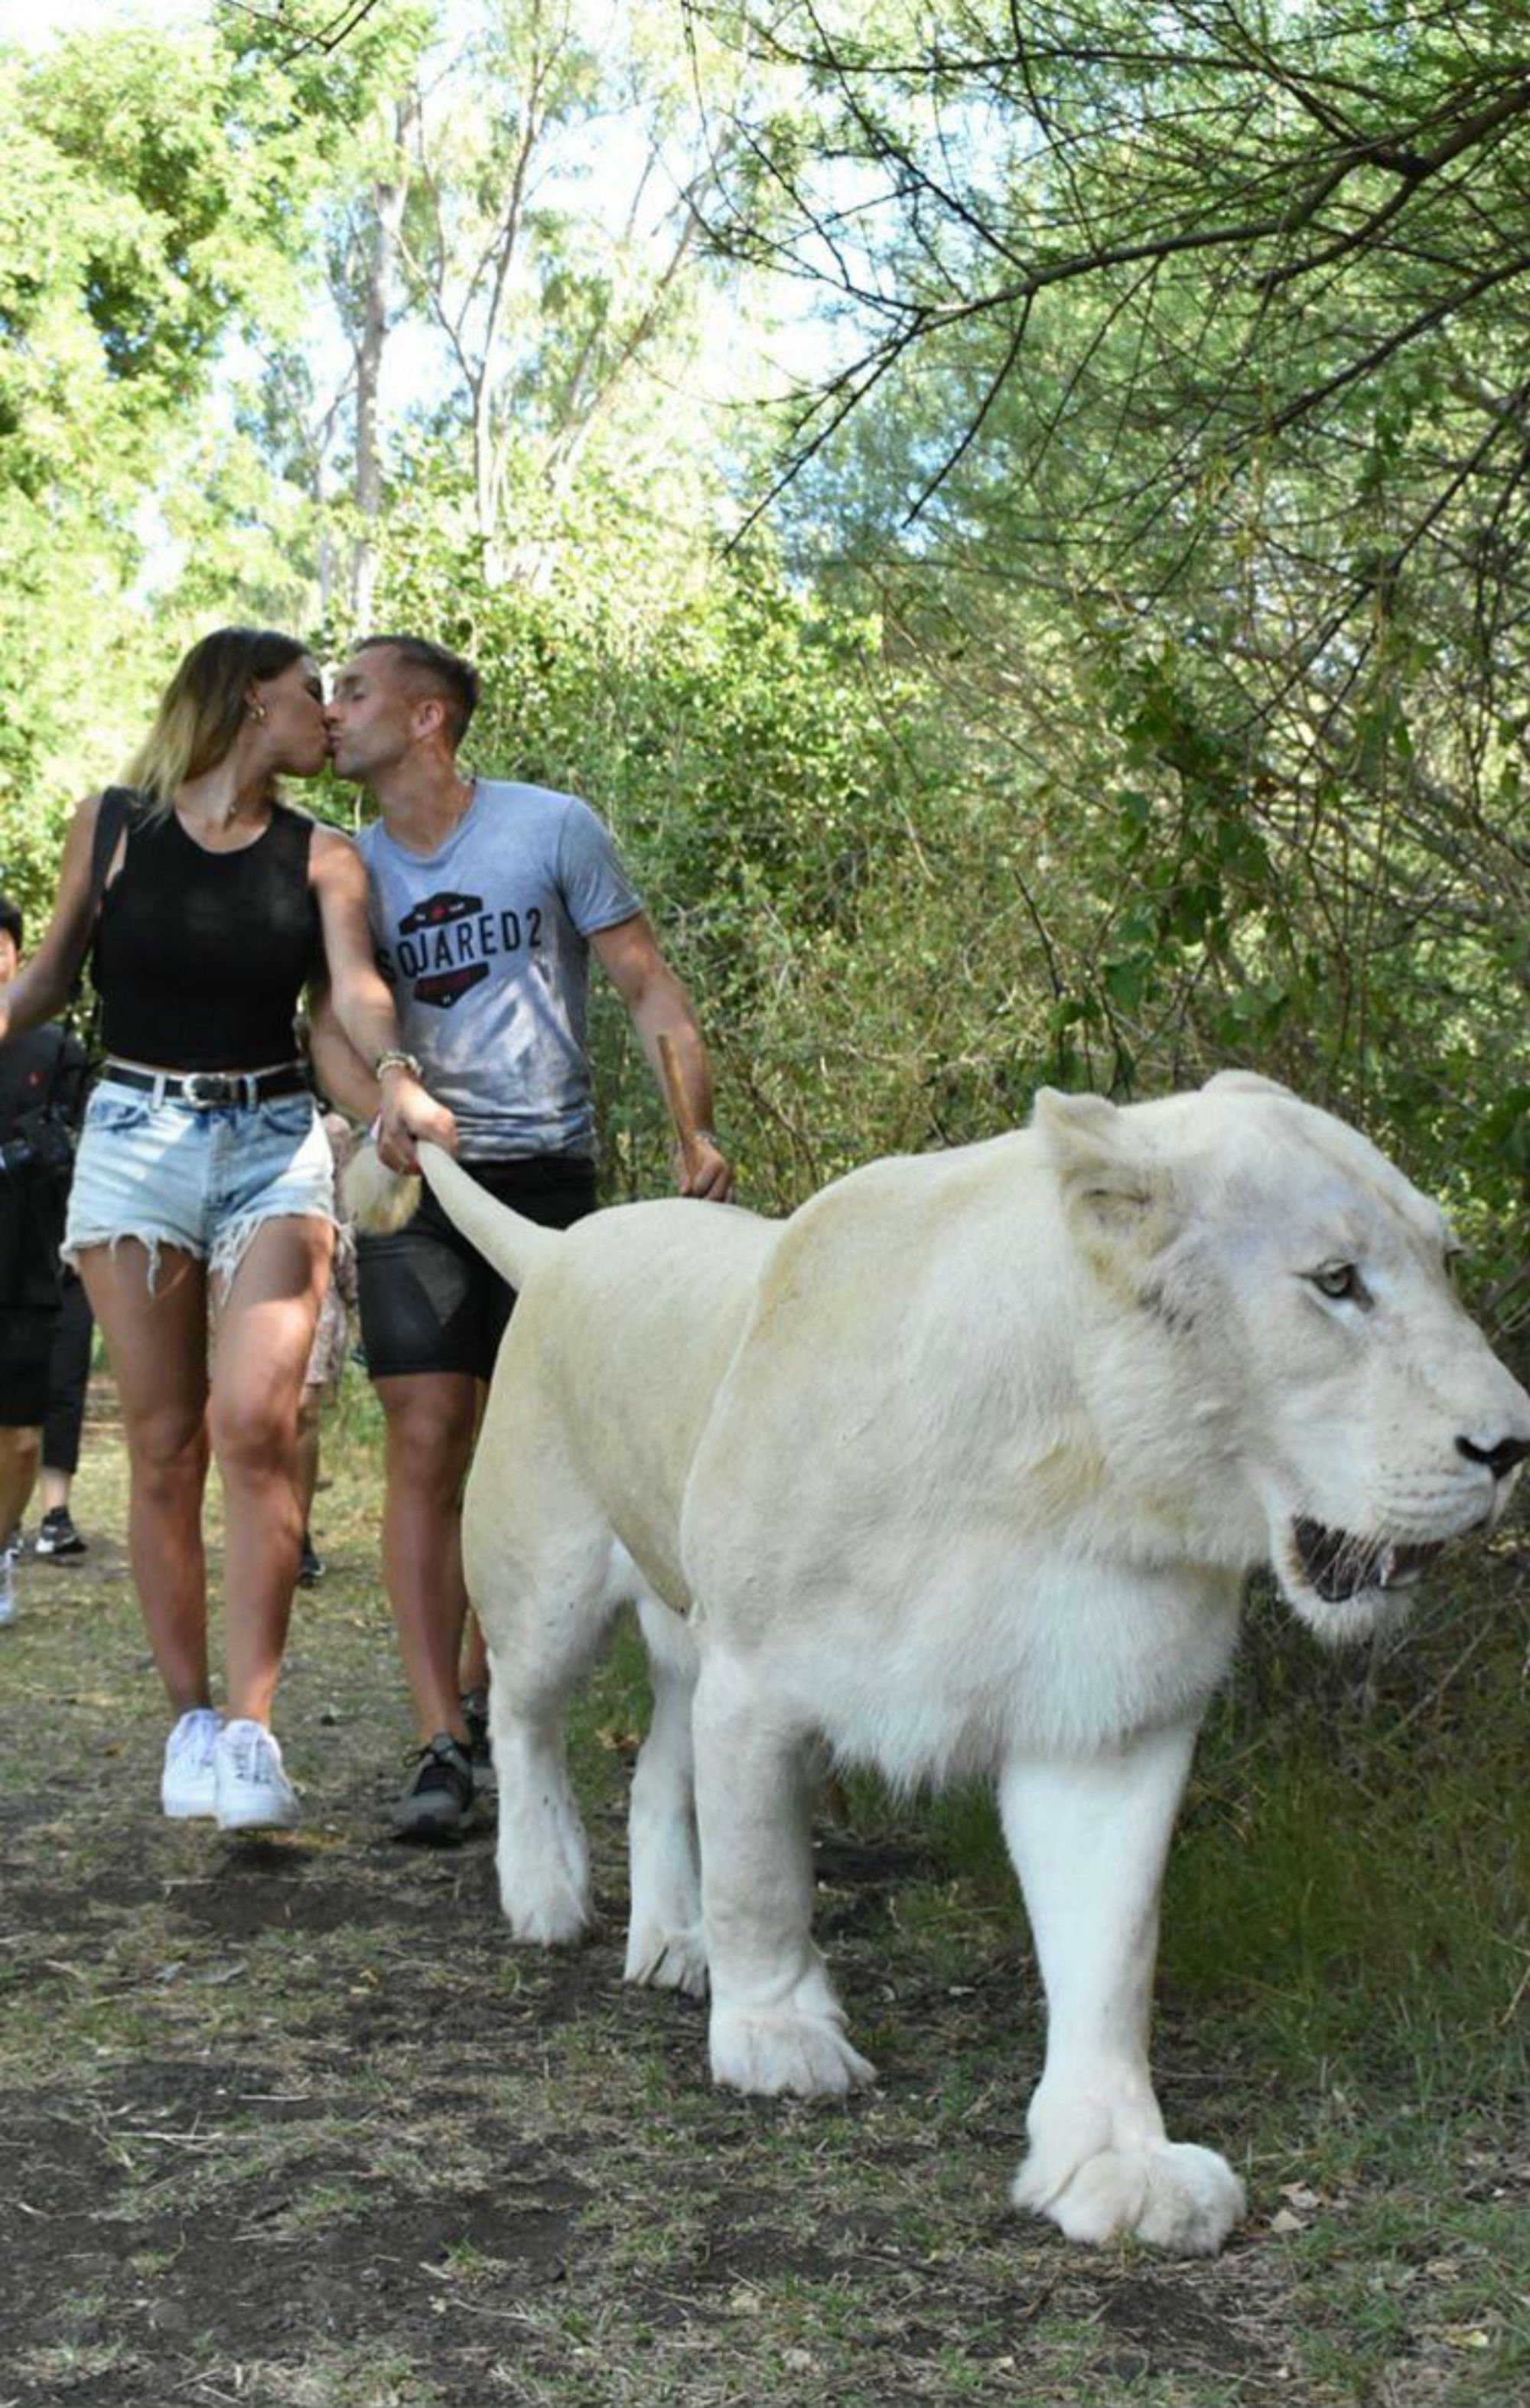 Allau de crítiques a Deulofeu per humiliar un lleó a Instagram